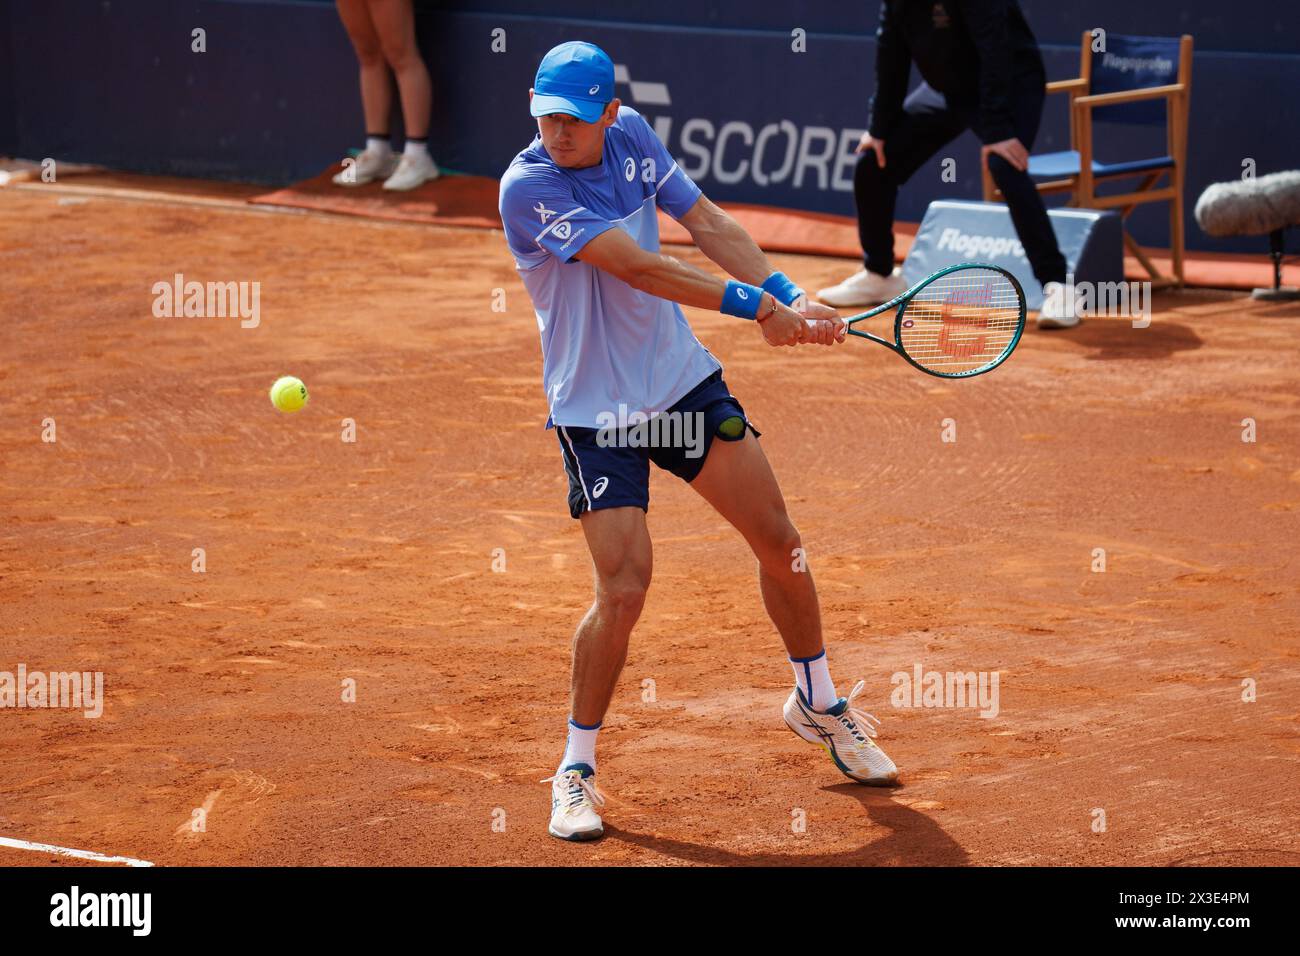 Barcelone, Espagne. 17 avril 2024. Alex de Minaur en action lors du tournoi de tennis Barcelona Open Banc de Sabadell au Reial Club de Tennis Ba Banque D'Images